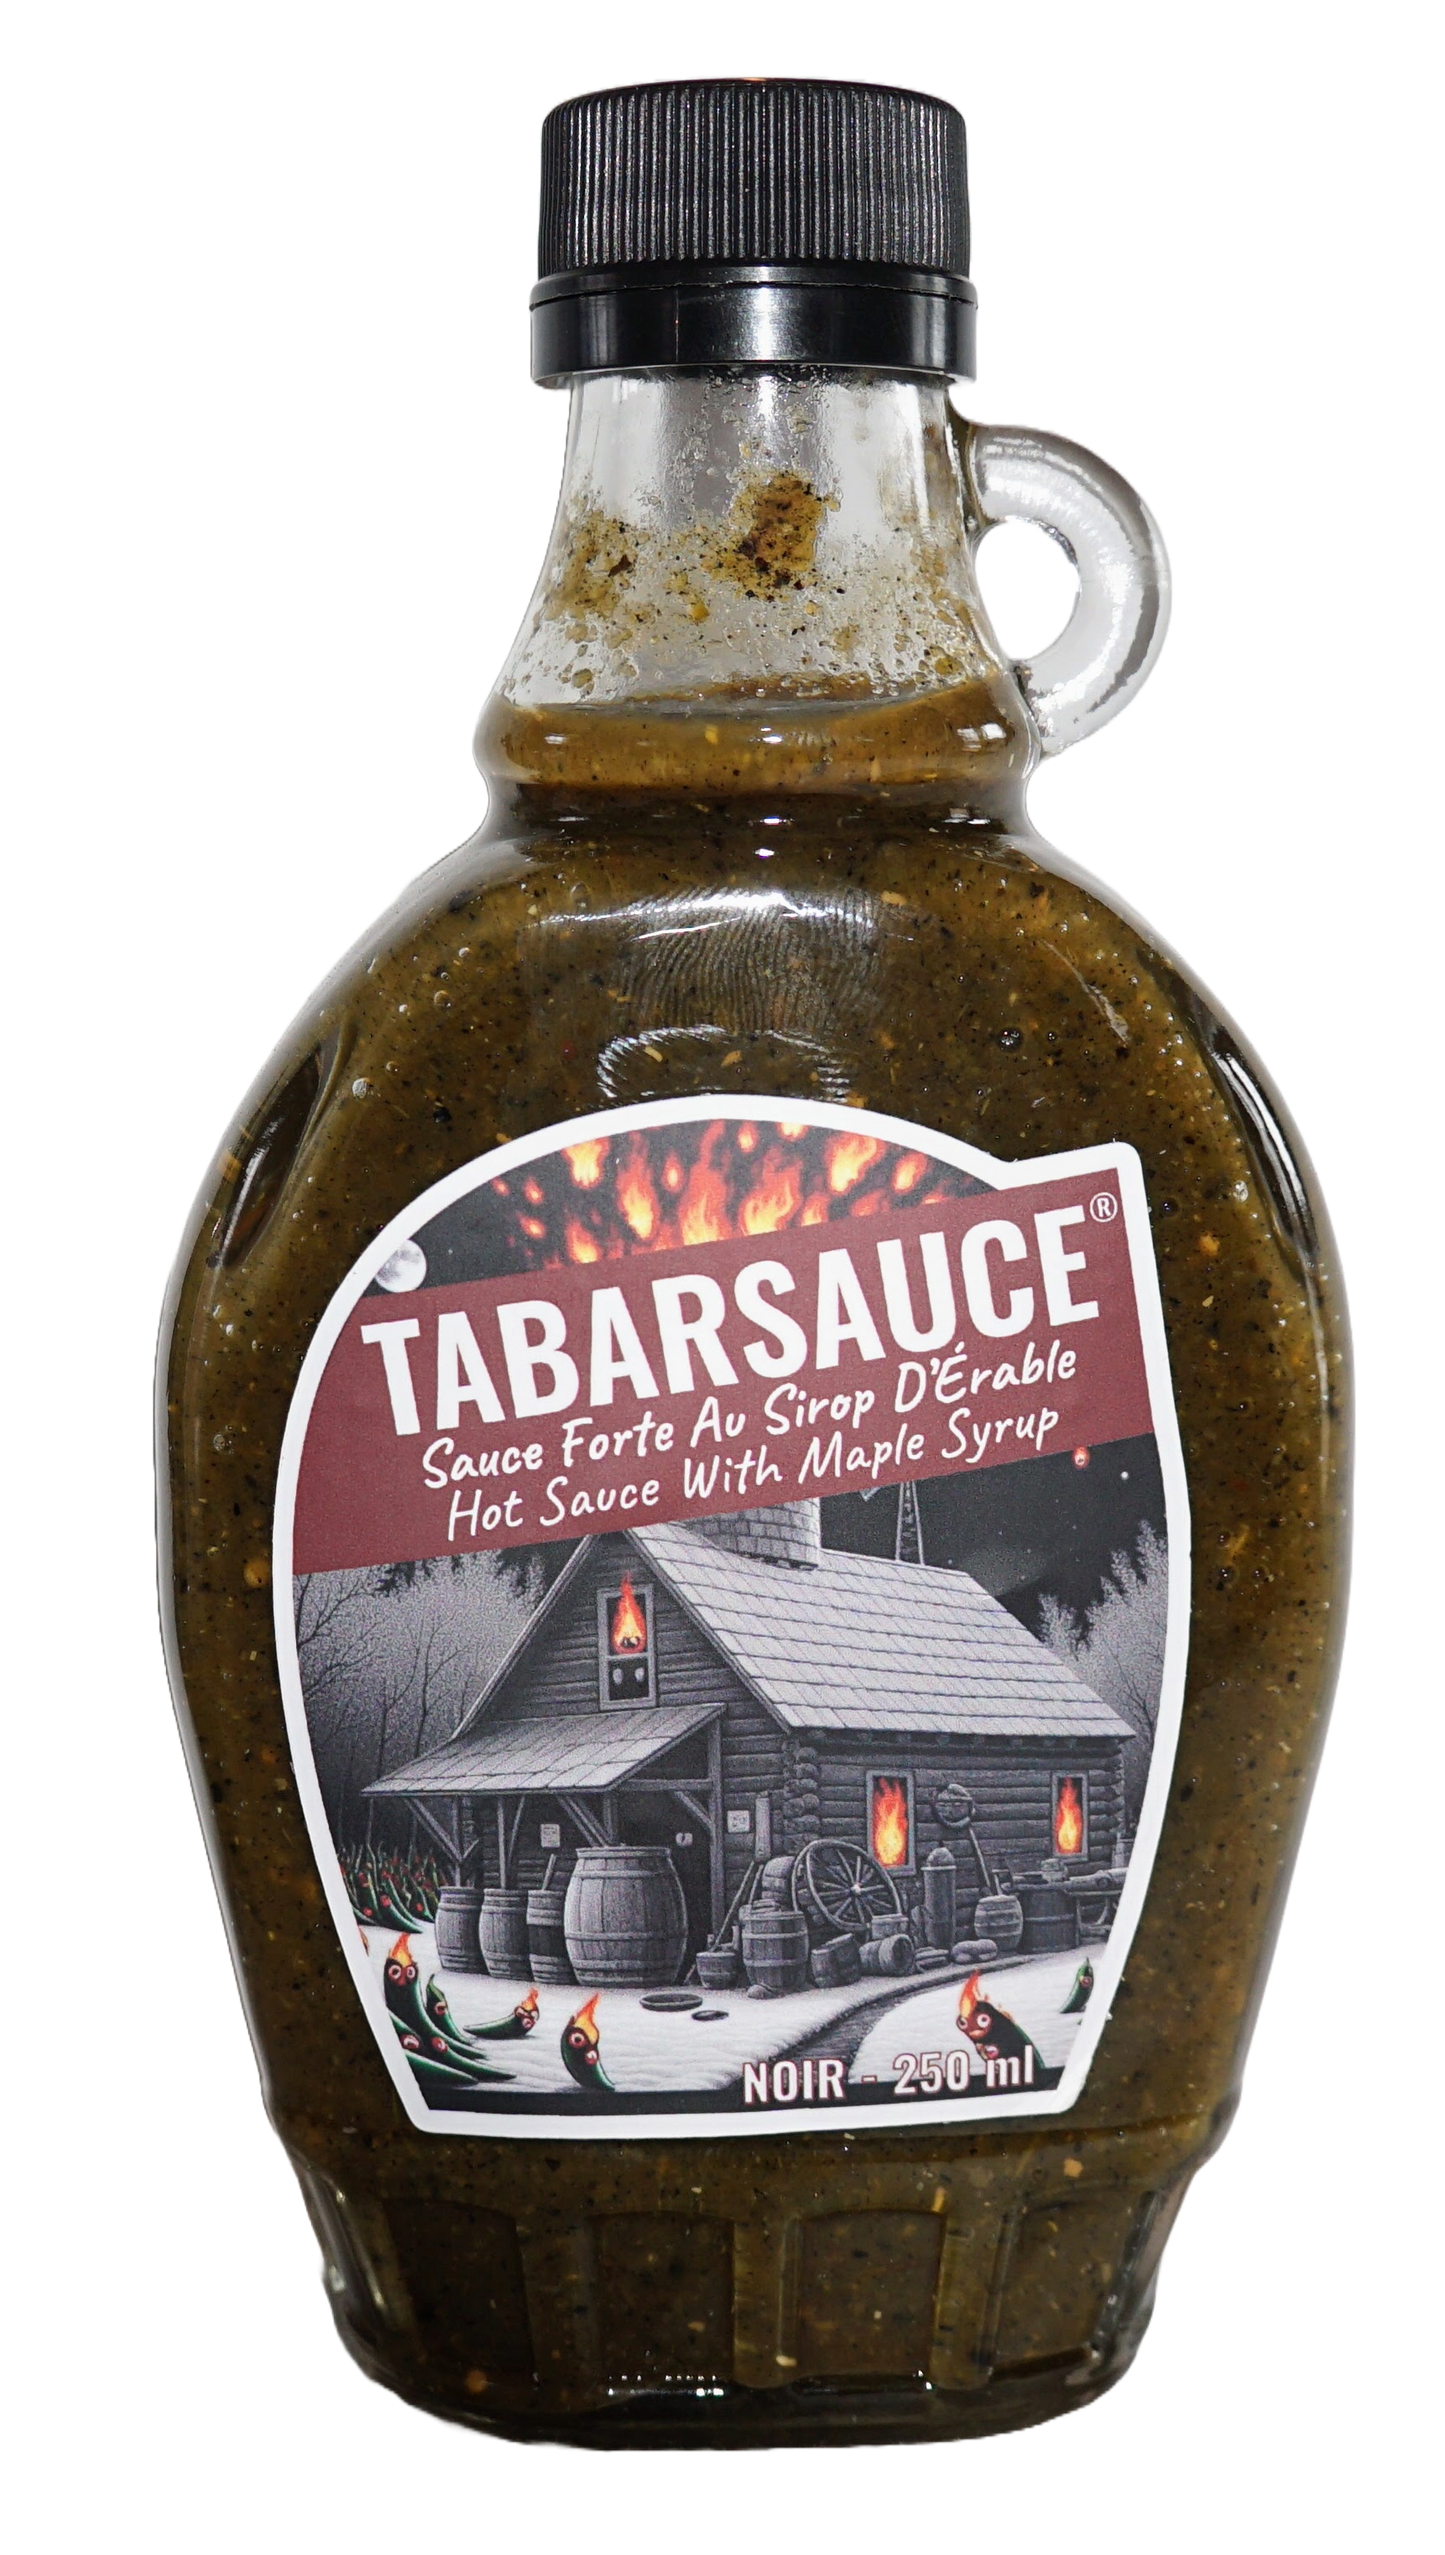 Tabarsauce Noir - 250ml bottle